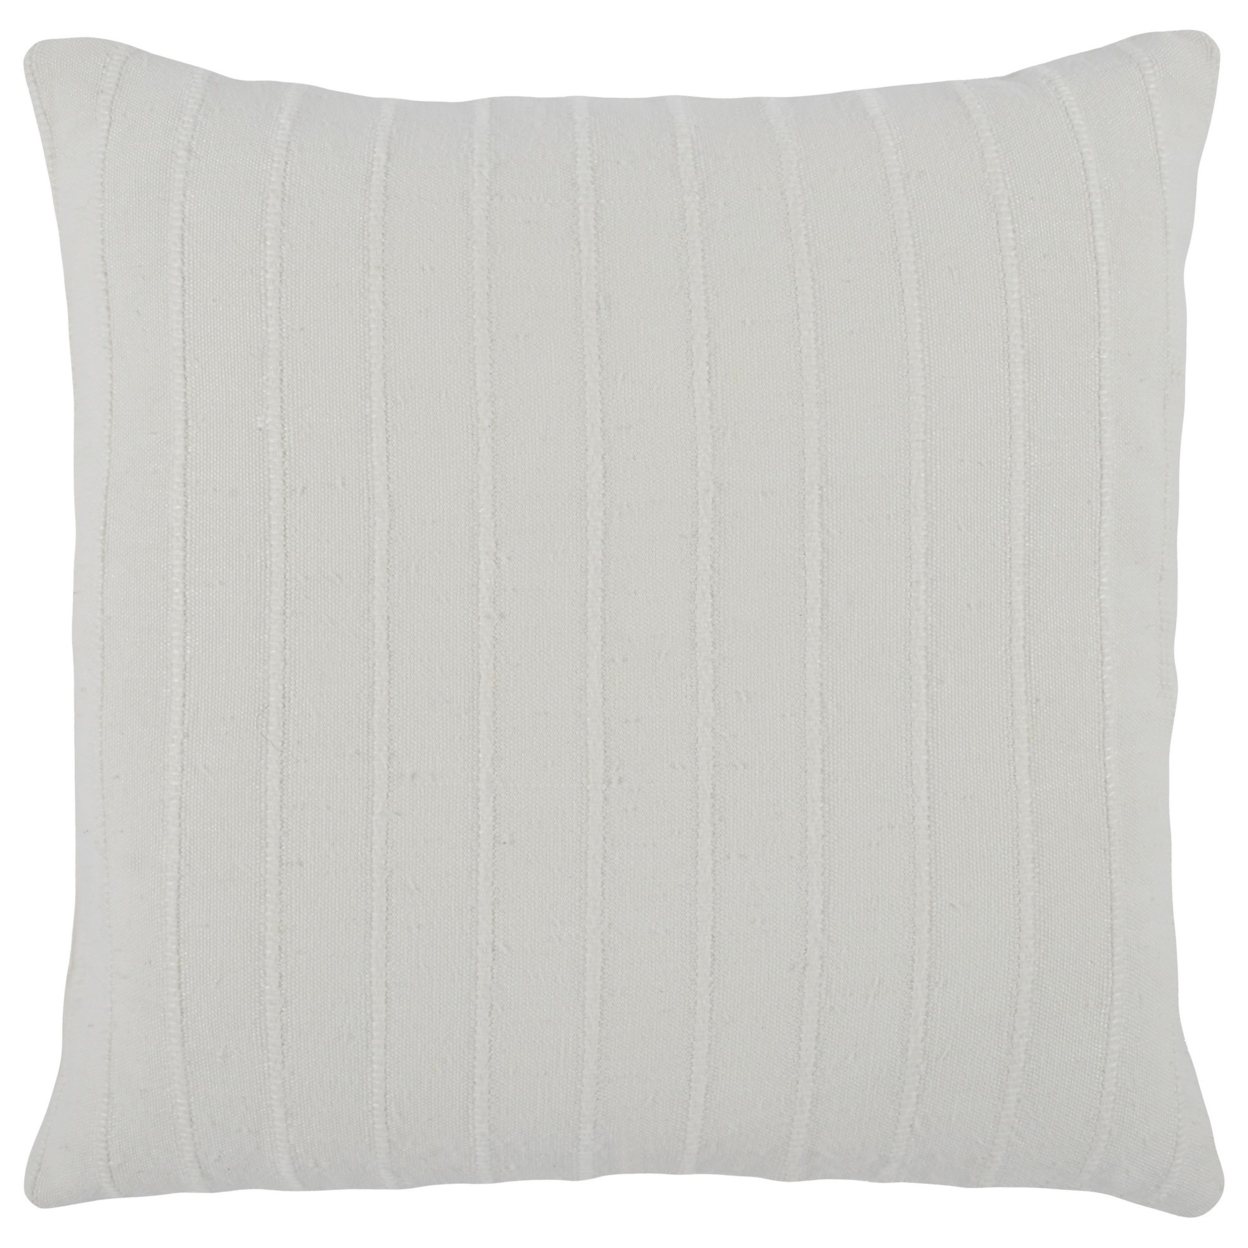 Kai 22 X 22 Throw Pillow, Tonal Woven Stripes, Cotton Viscose Blend, White, Saltoro Sherpi